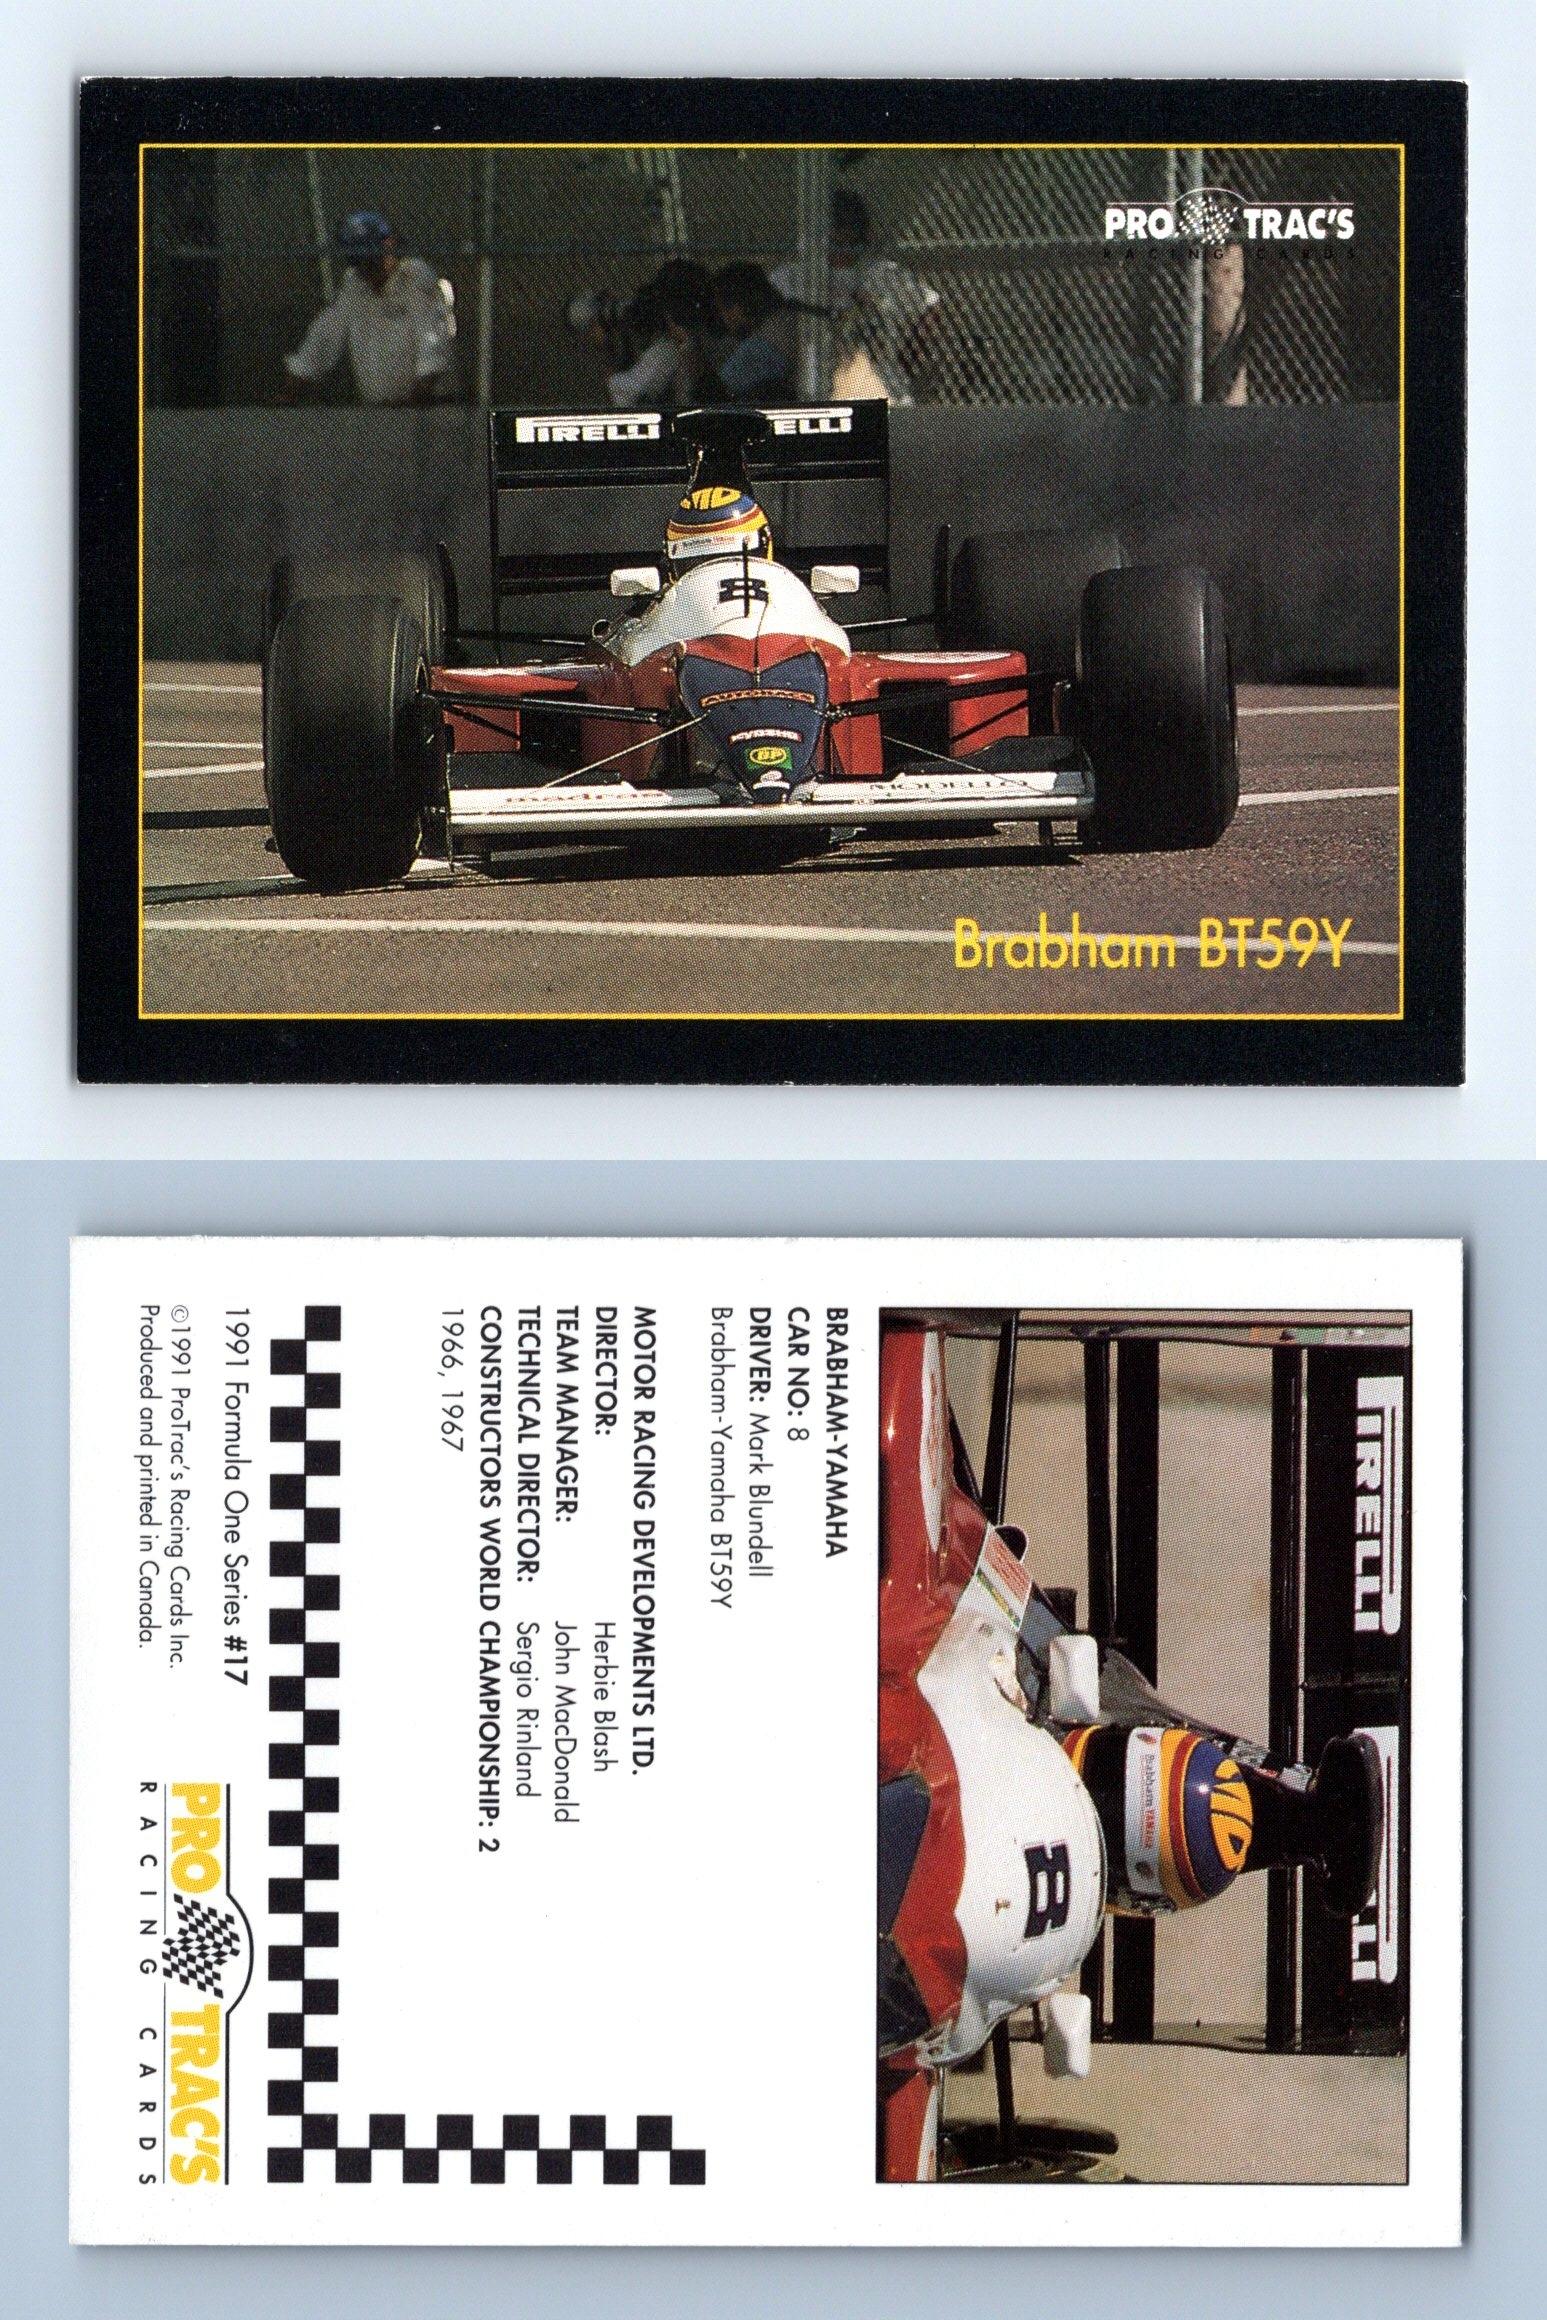 Brabham BT59Y #17 Formula 1 Pro Trac's 1991 Premier Racing Card